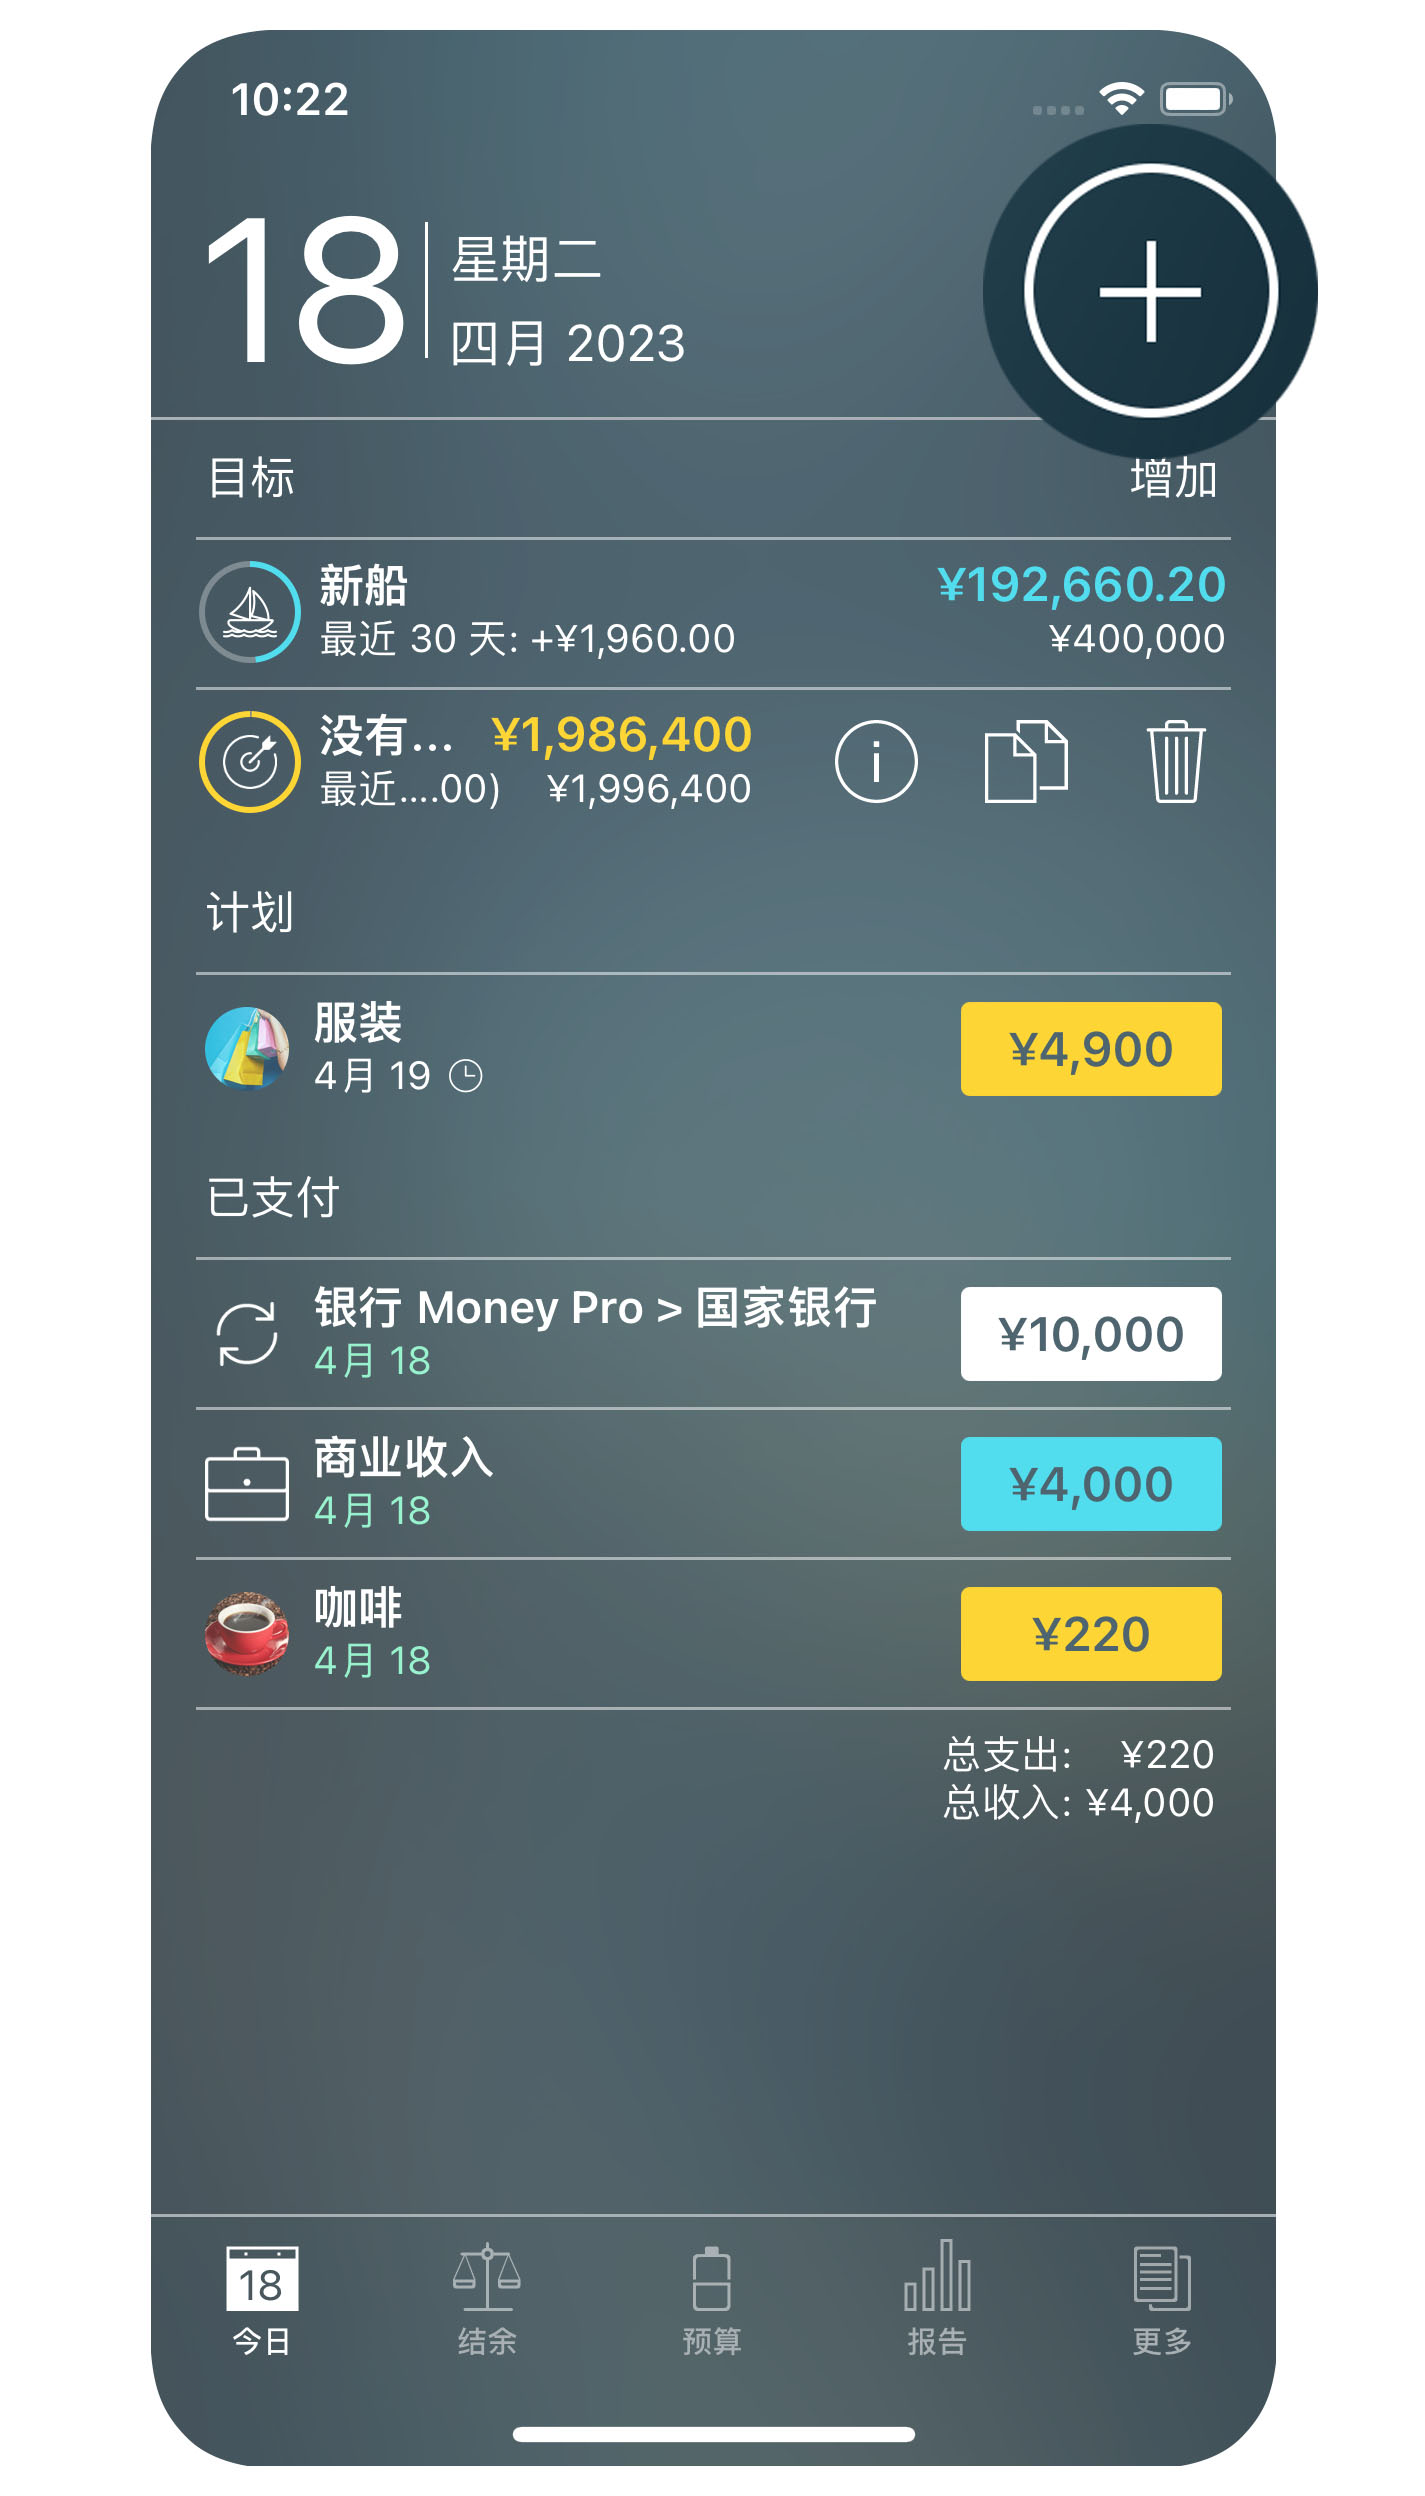 Money Pro - 创建交易 - iPhone